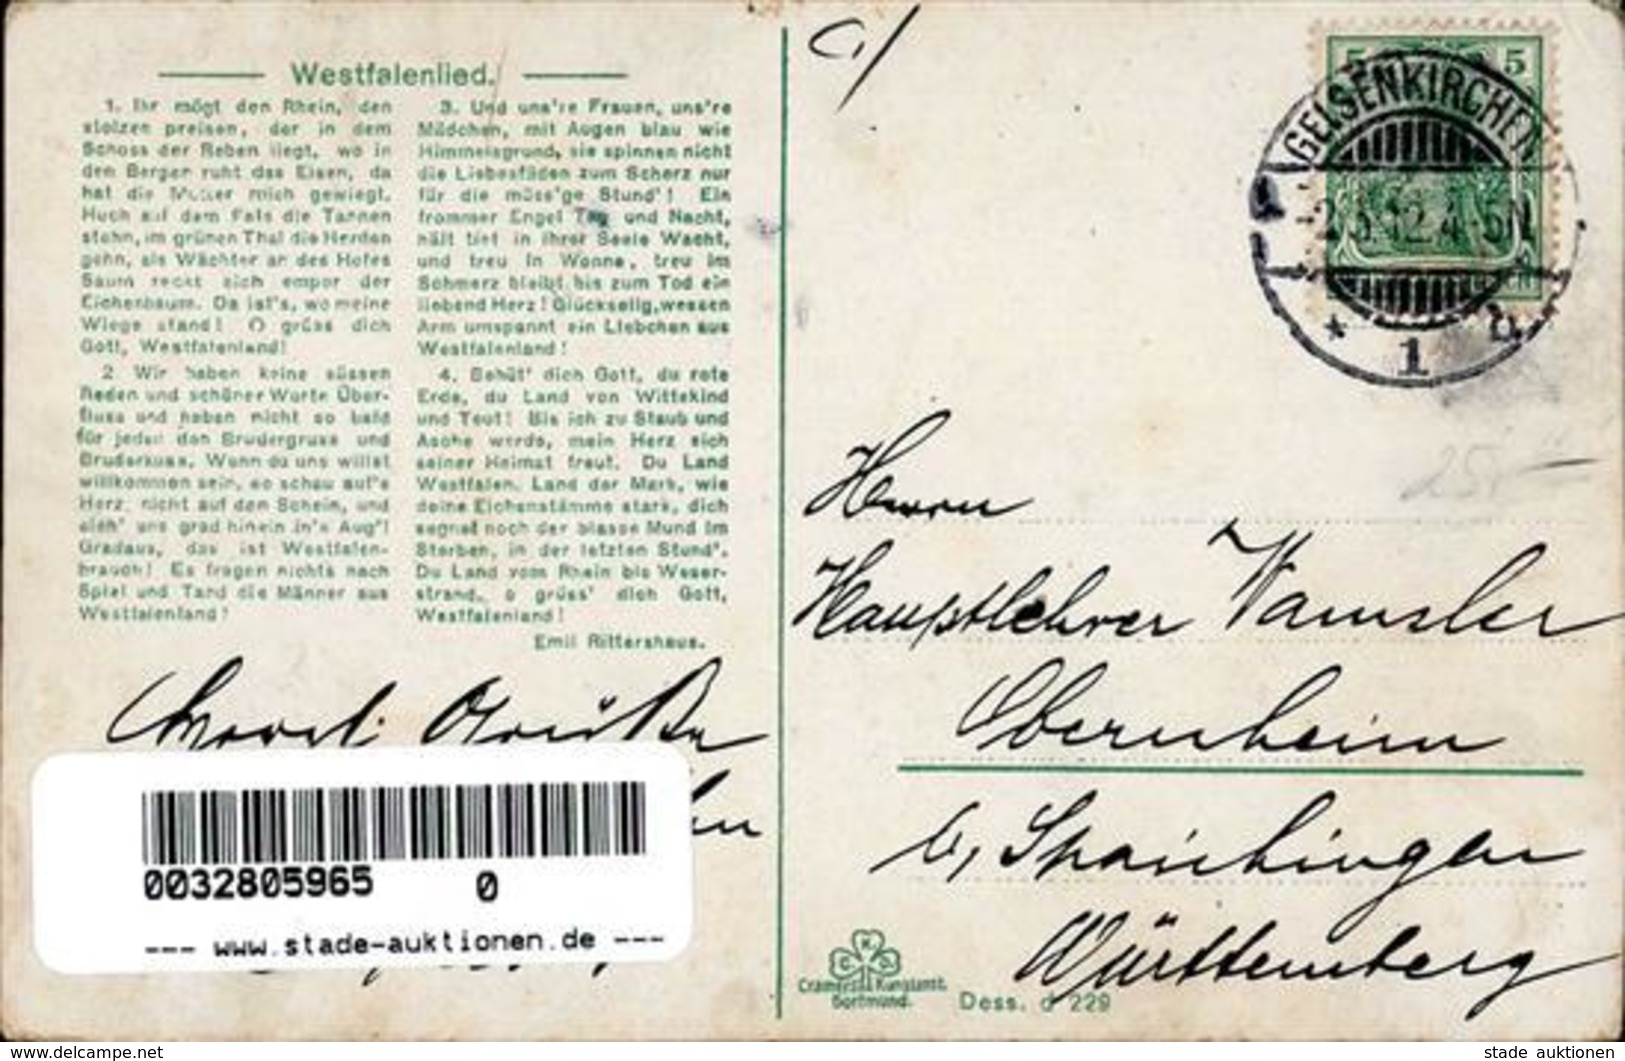 Alkoholwerbung Steinhäger Ein Frühstück Im Westfalenlande Werbe AK 1912 I-II (Eckbug) - Publicidad